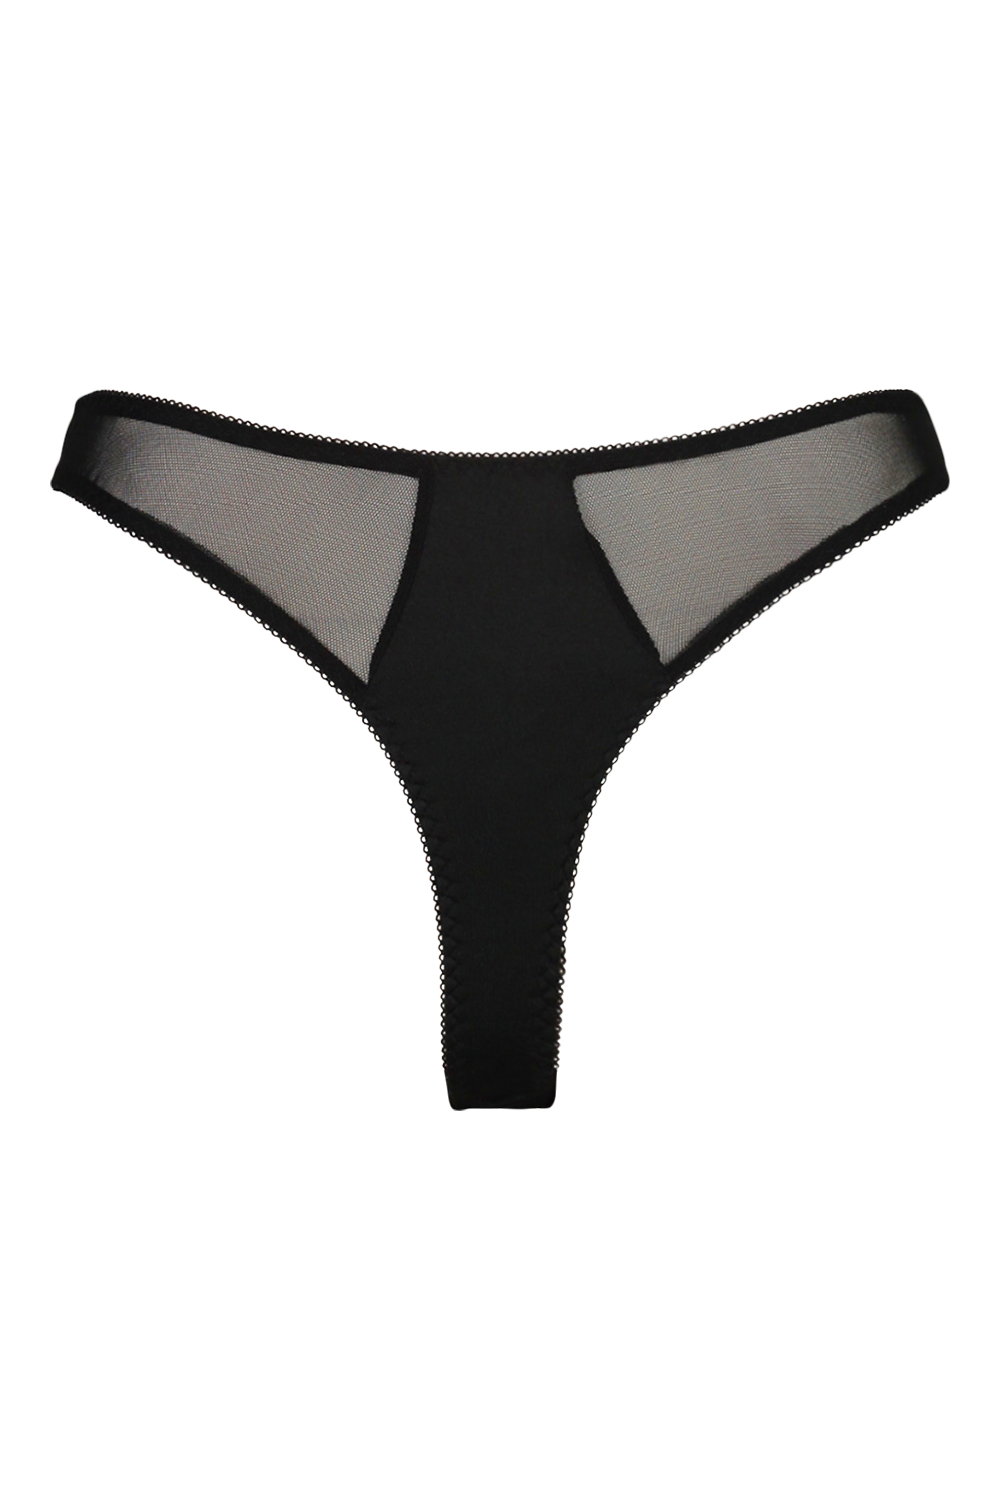 Underwear with bow - Black